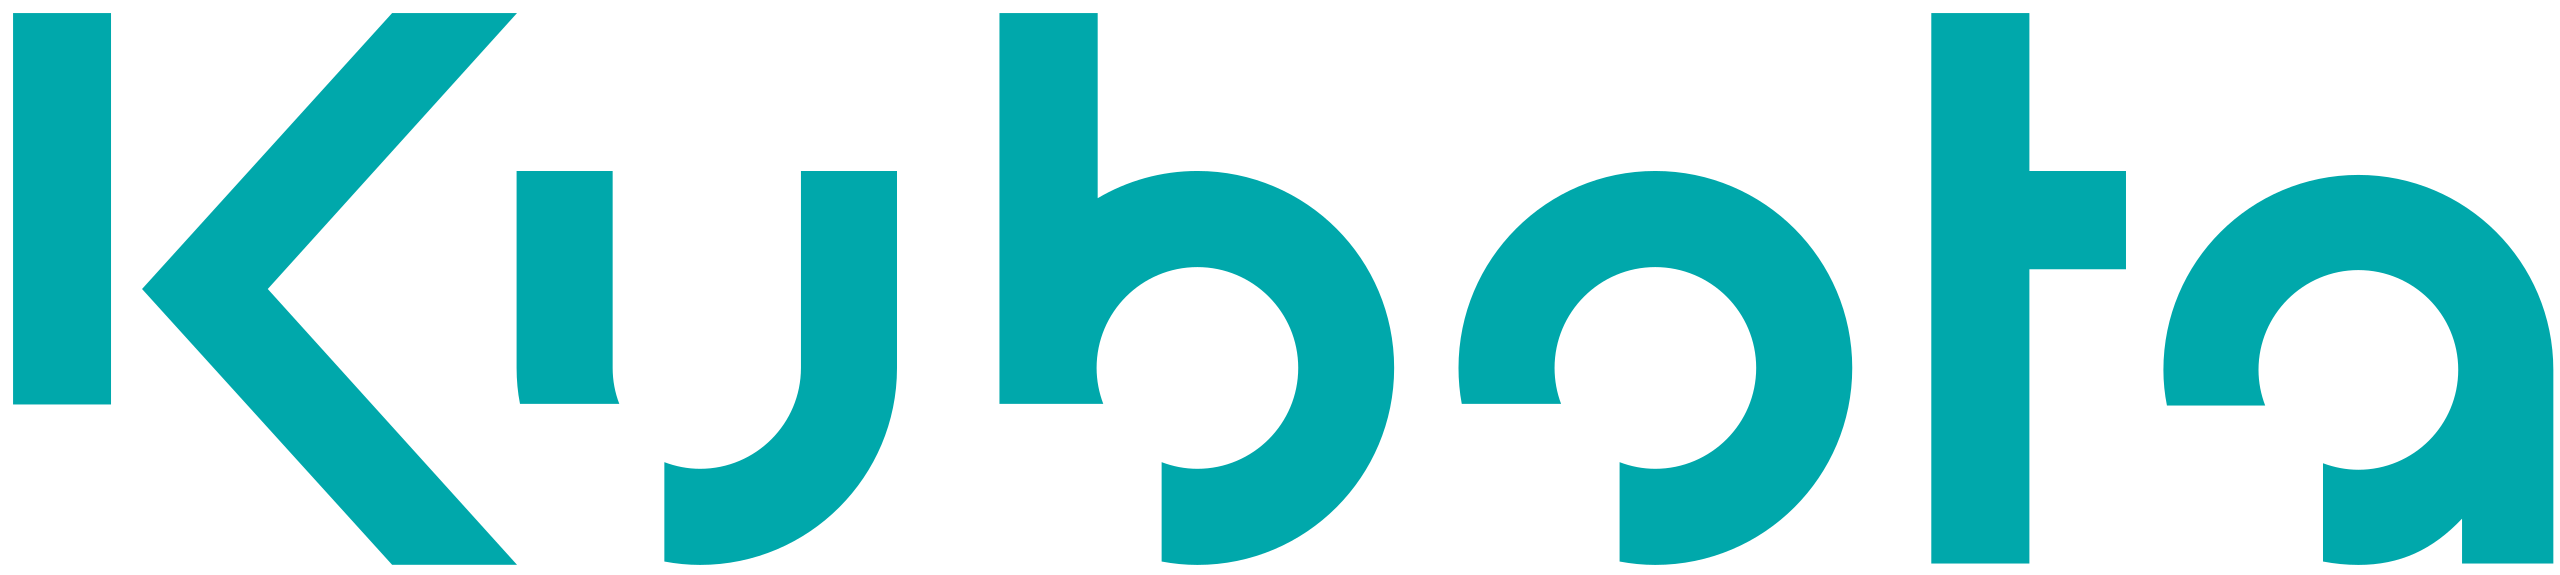 Kubota_Logo.svg.png